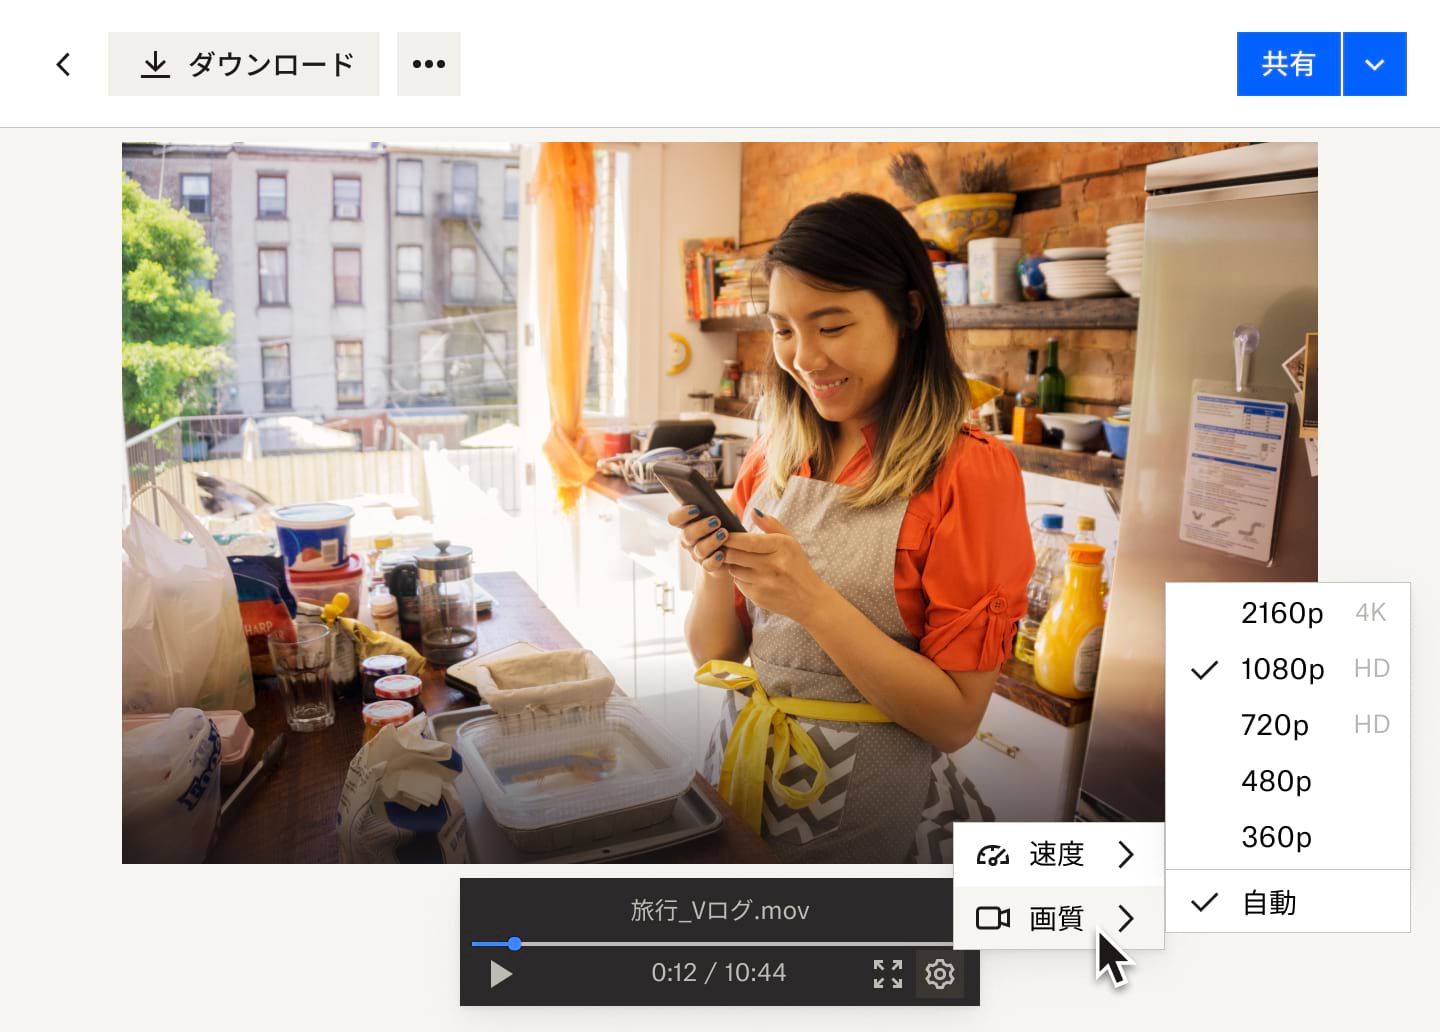 パン屋で働いている女性の Dropbox 動画ファイルで、設定ボタンのプルダウンから表示されている動画の速度オプションと画質オプション